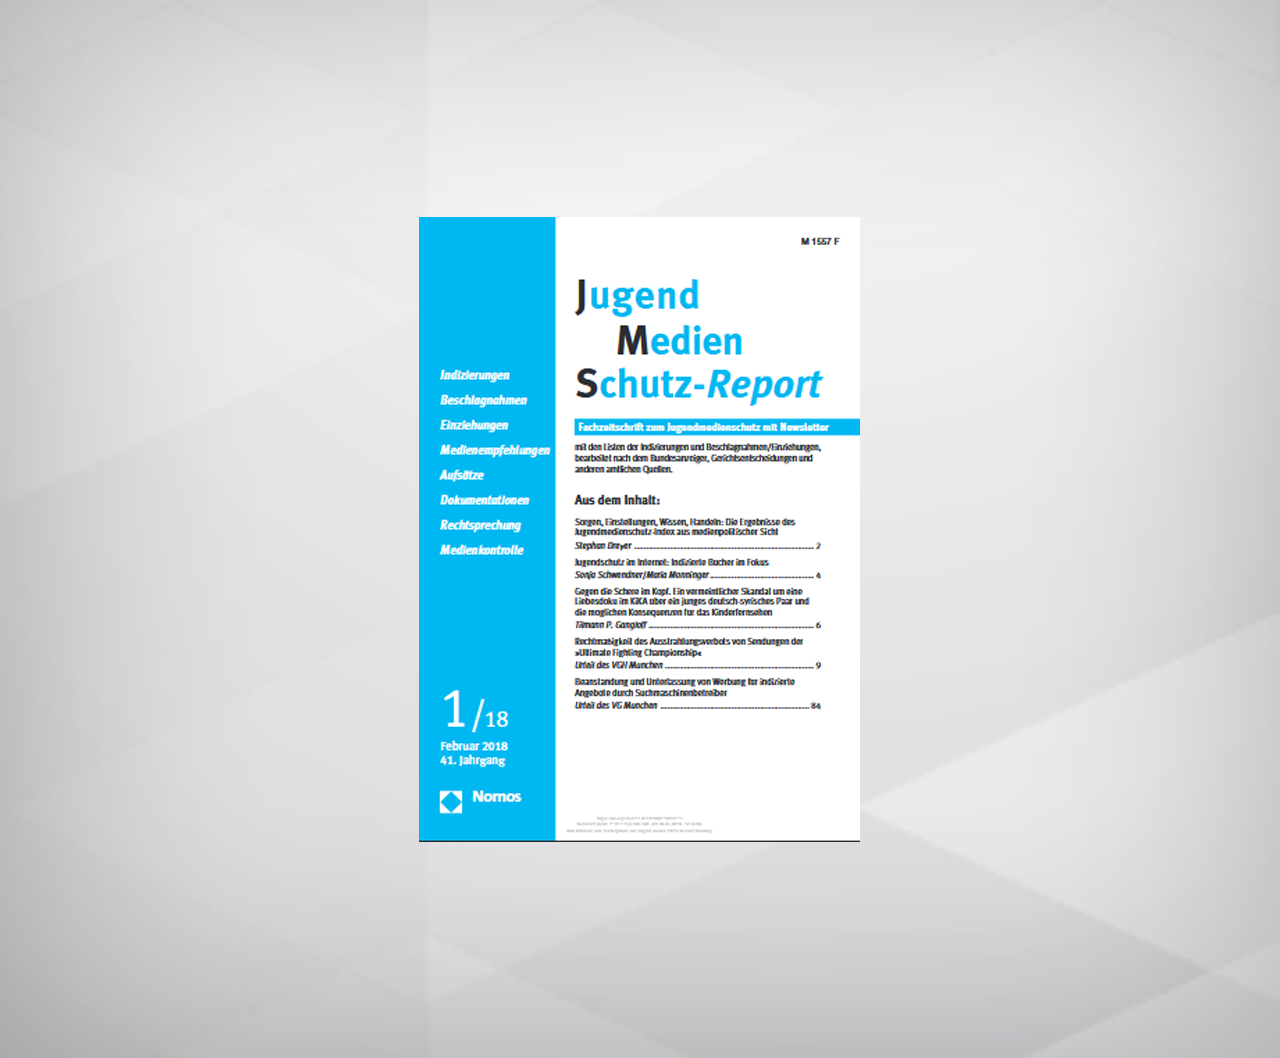 Sorgen, Einstellungen, Wissen, Handeln: Die Ergebnisse des Jugendmedienschutz-Index aus medienpolitischer Sicht